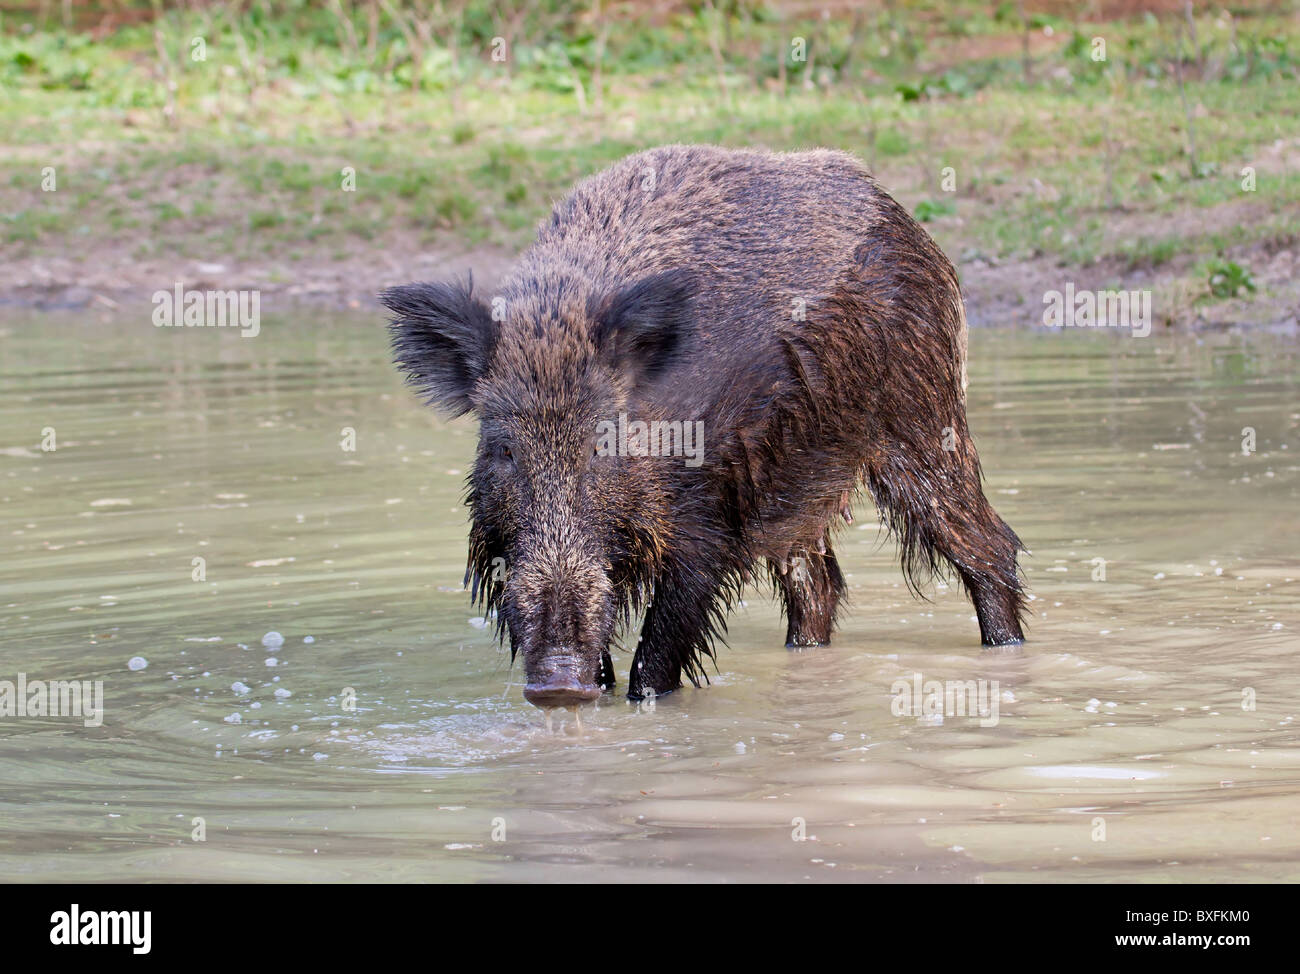 Wildschwein im Wasser - Sus scrofa Stockfoto